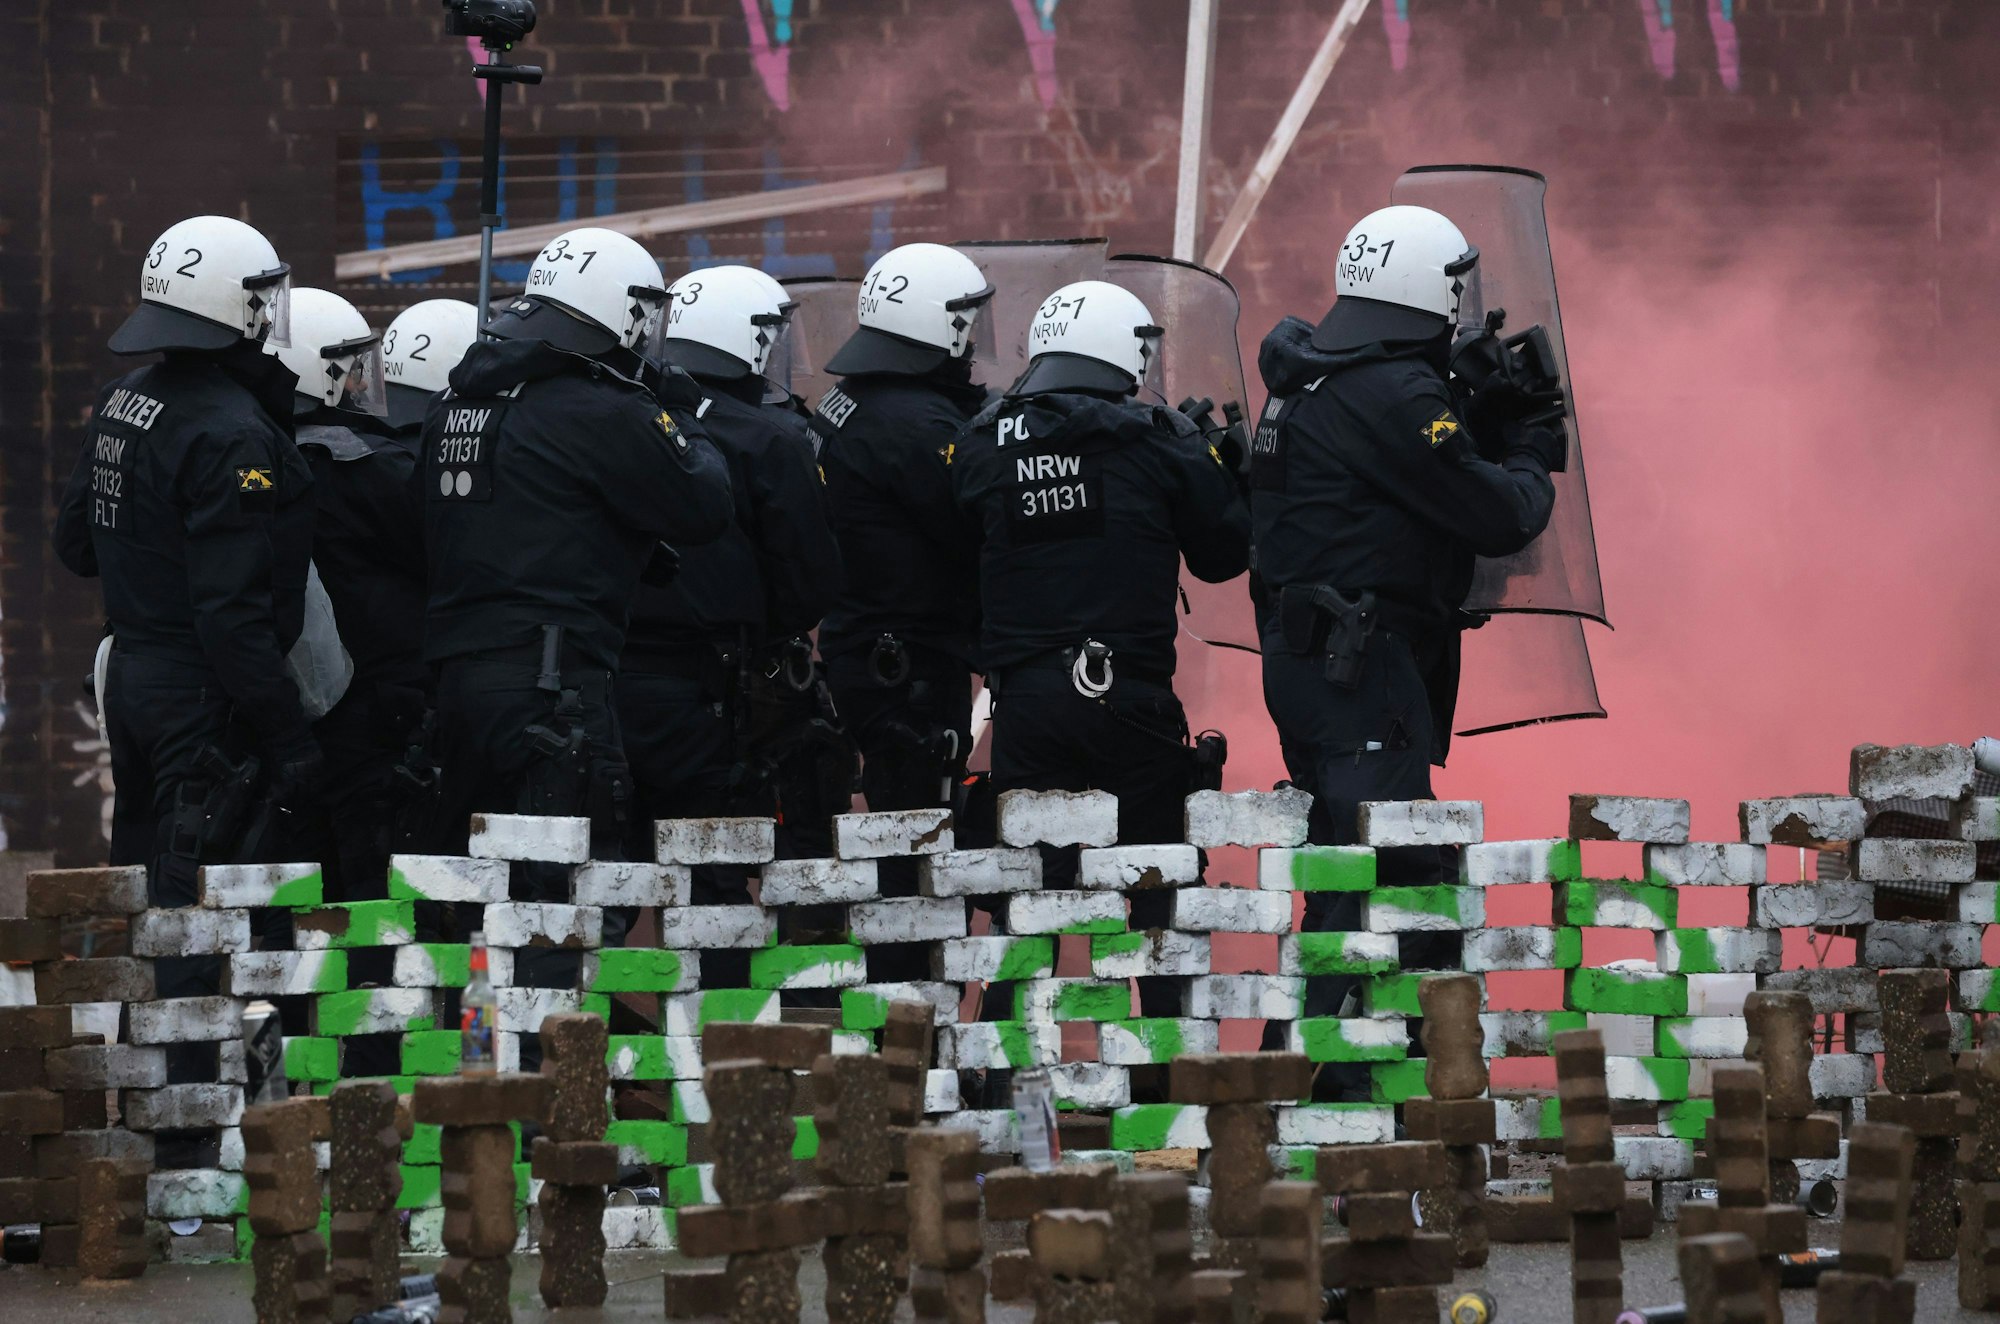 Polizisten in Schutzmontur stehen hinter Barrikaden der Klimaschützern. Vor ihnen hat sich, vermutlich durch Böller, roter Rauch gebildet.